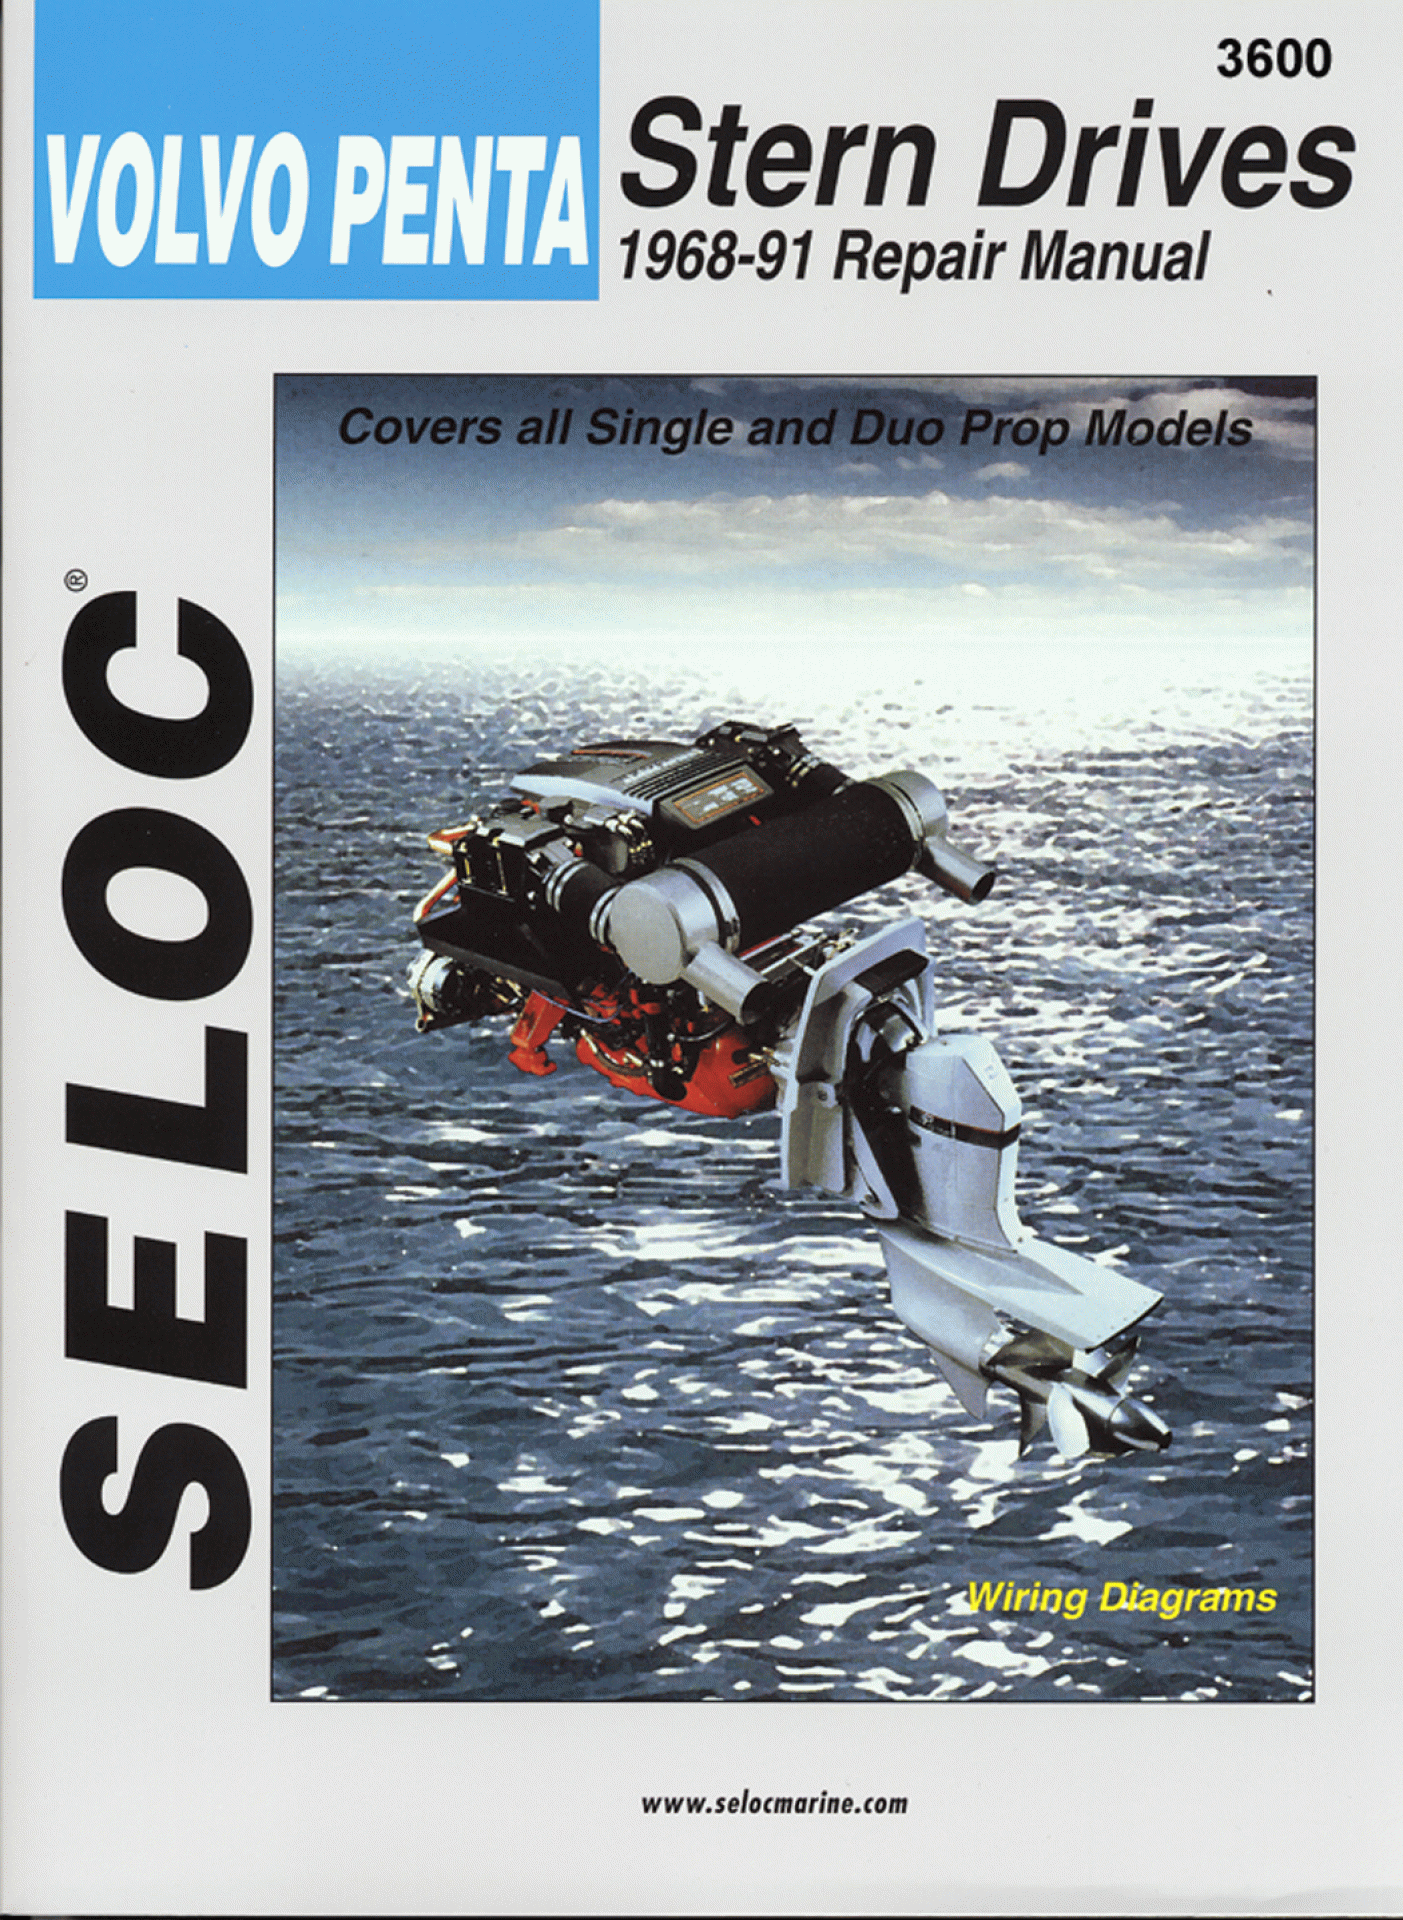 SELOC PUBLISHING | 18-03600 | REPAIR MANUAL Volvo Penta Stern Drive 1968-91